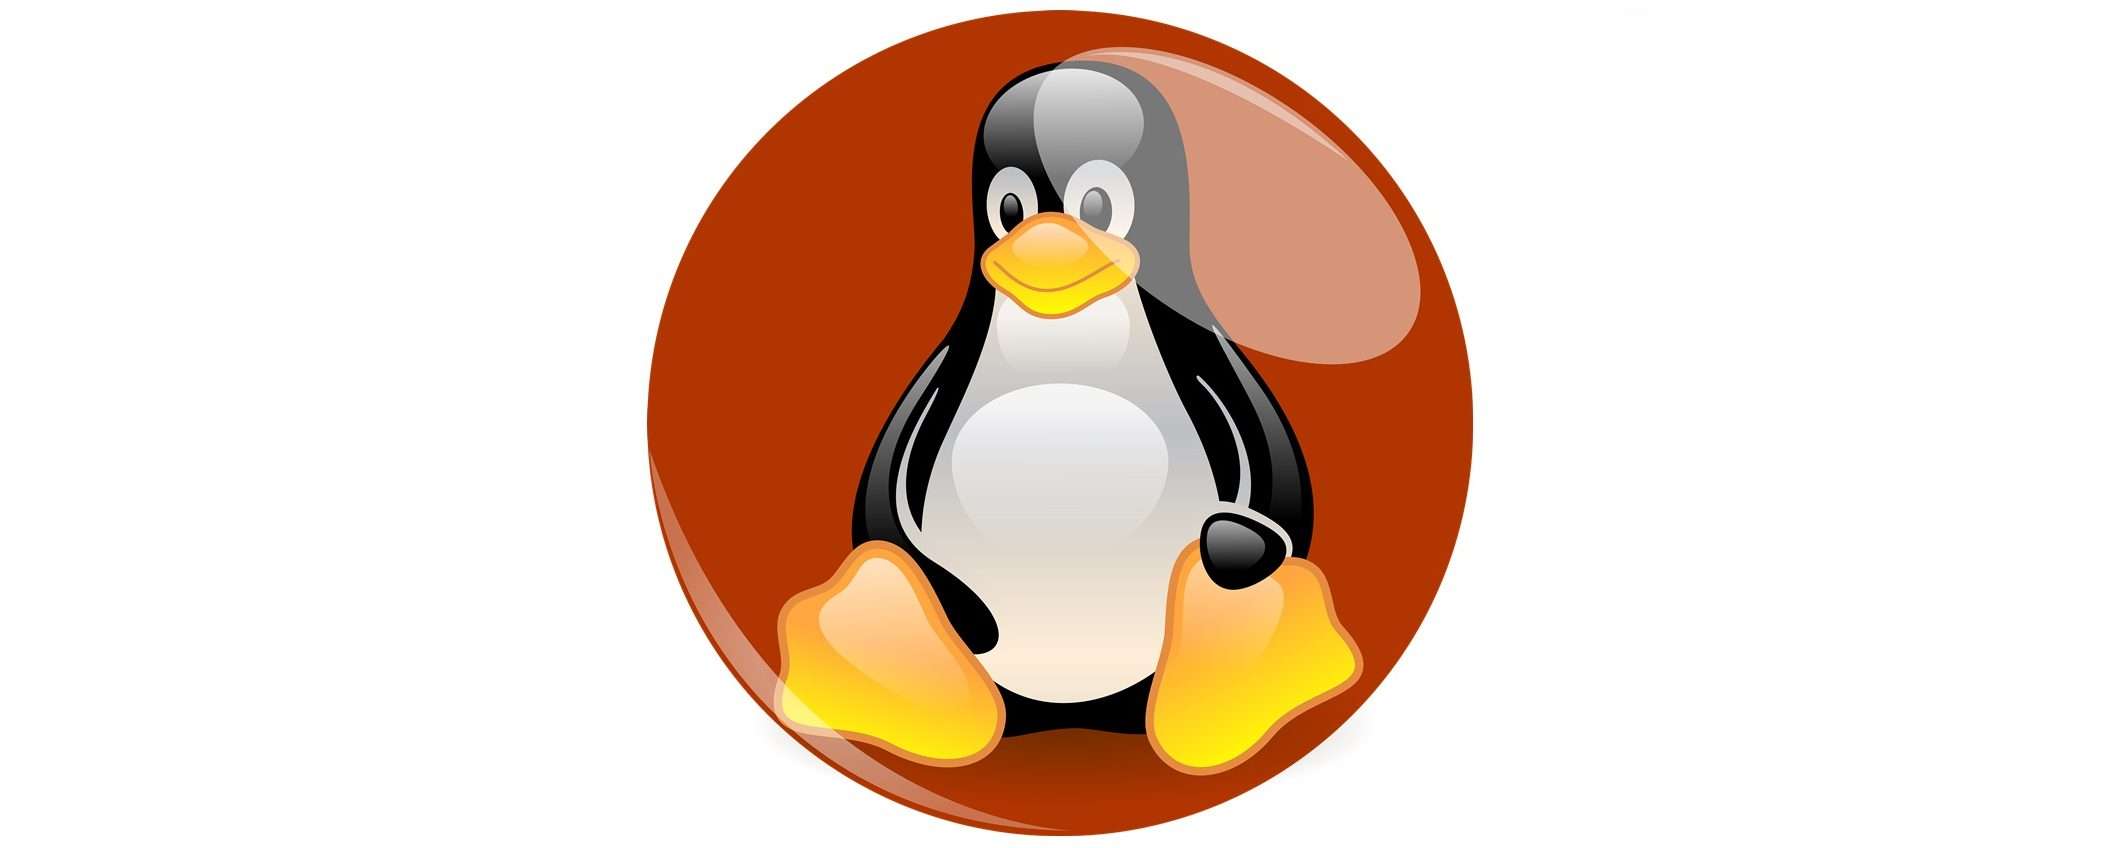 Free Download Manager rilascia script anti-malware per Linux